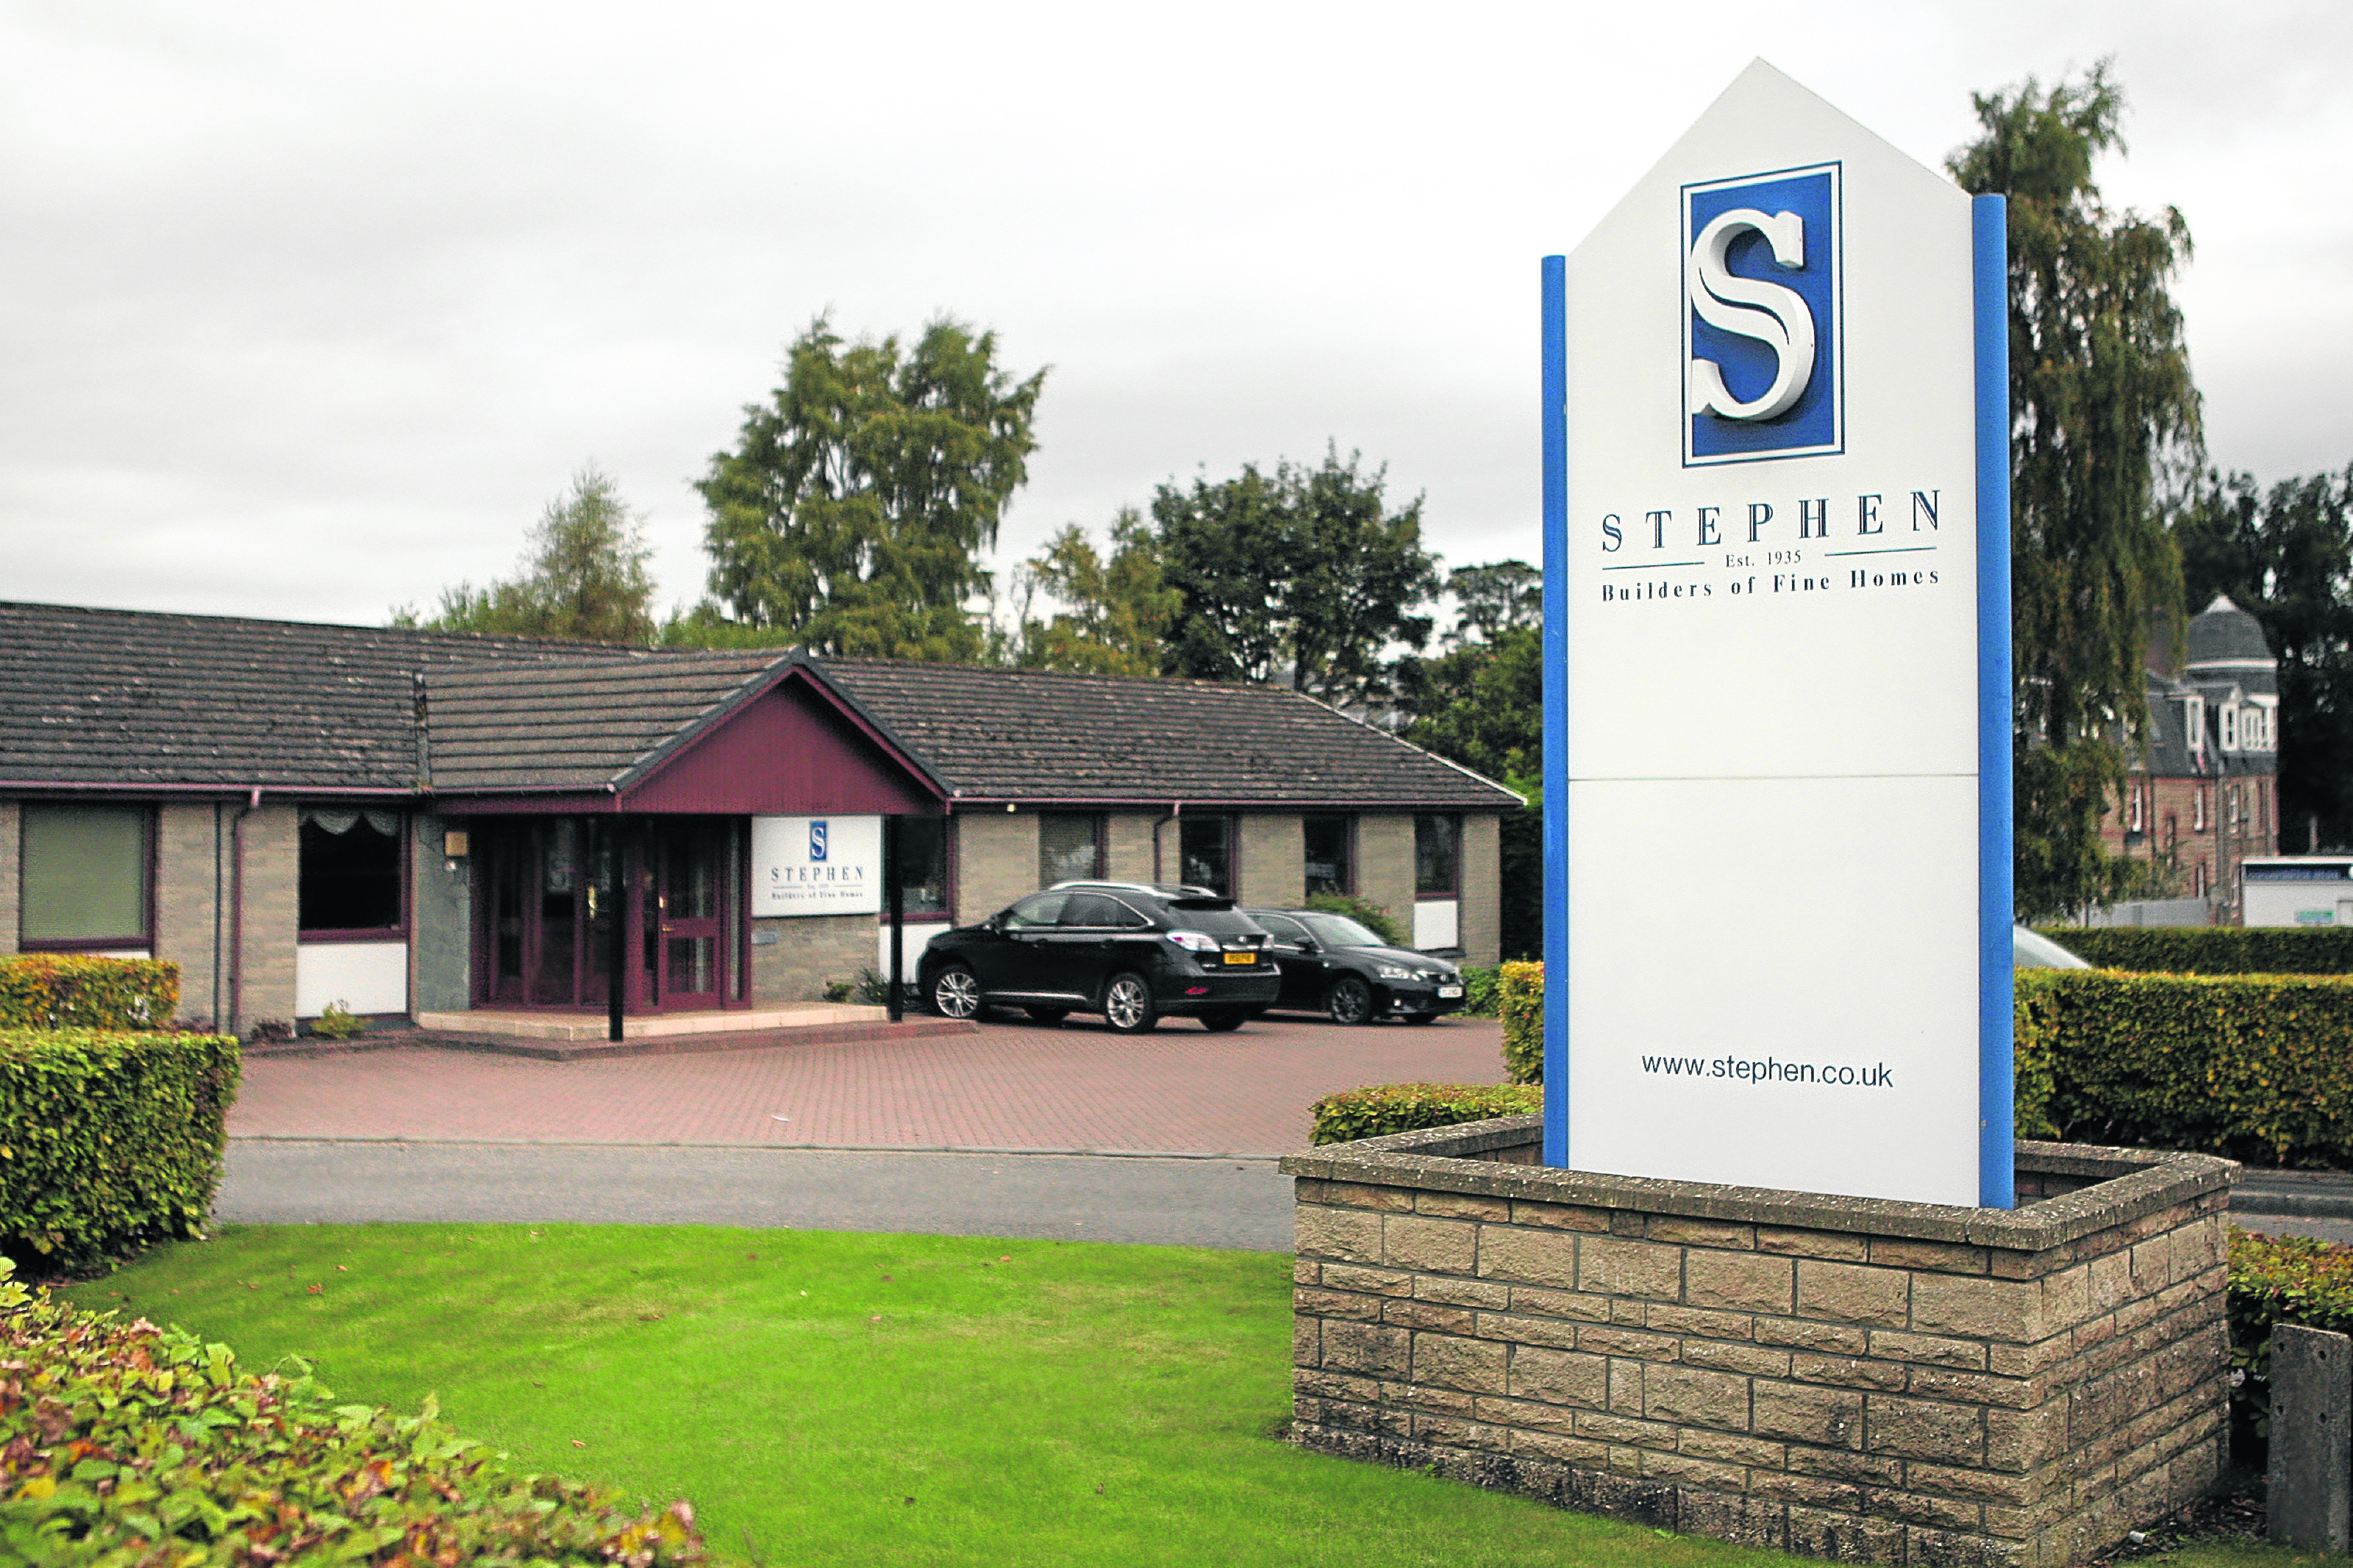 A&J Stephen's headquarters in Edinburgh Road, Perth.